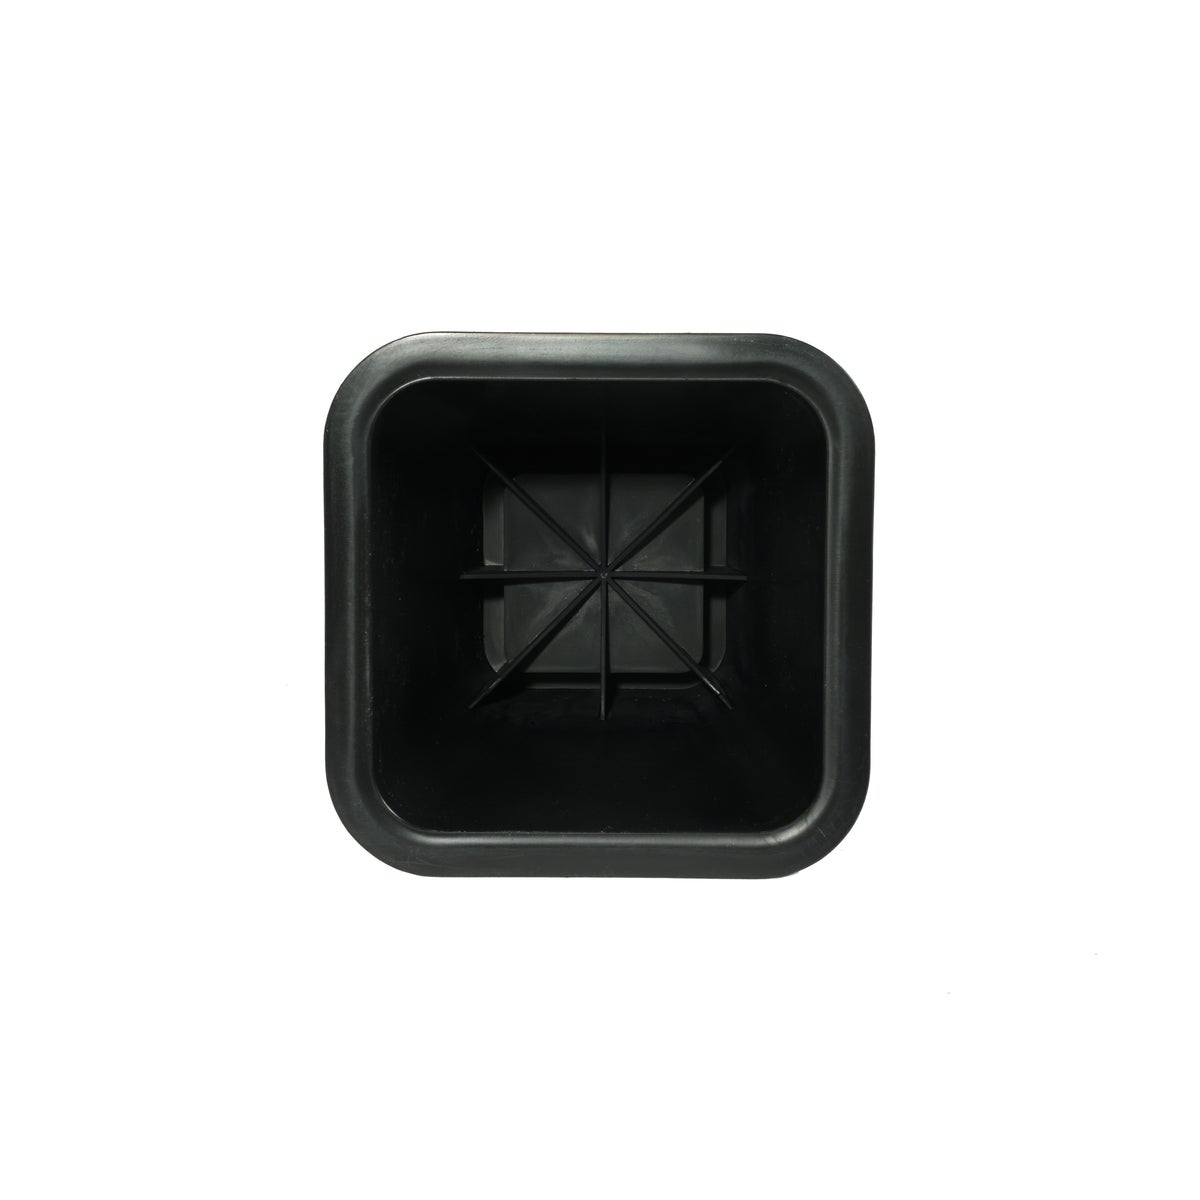 4PC Set Square Bed Riser-Black (12 Sets)